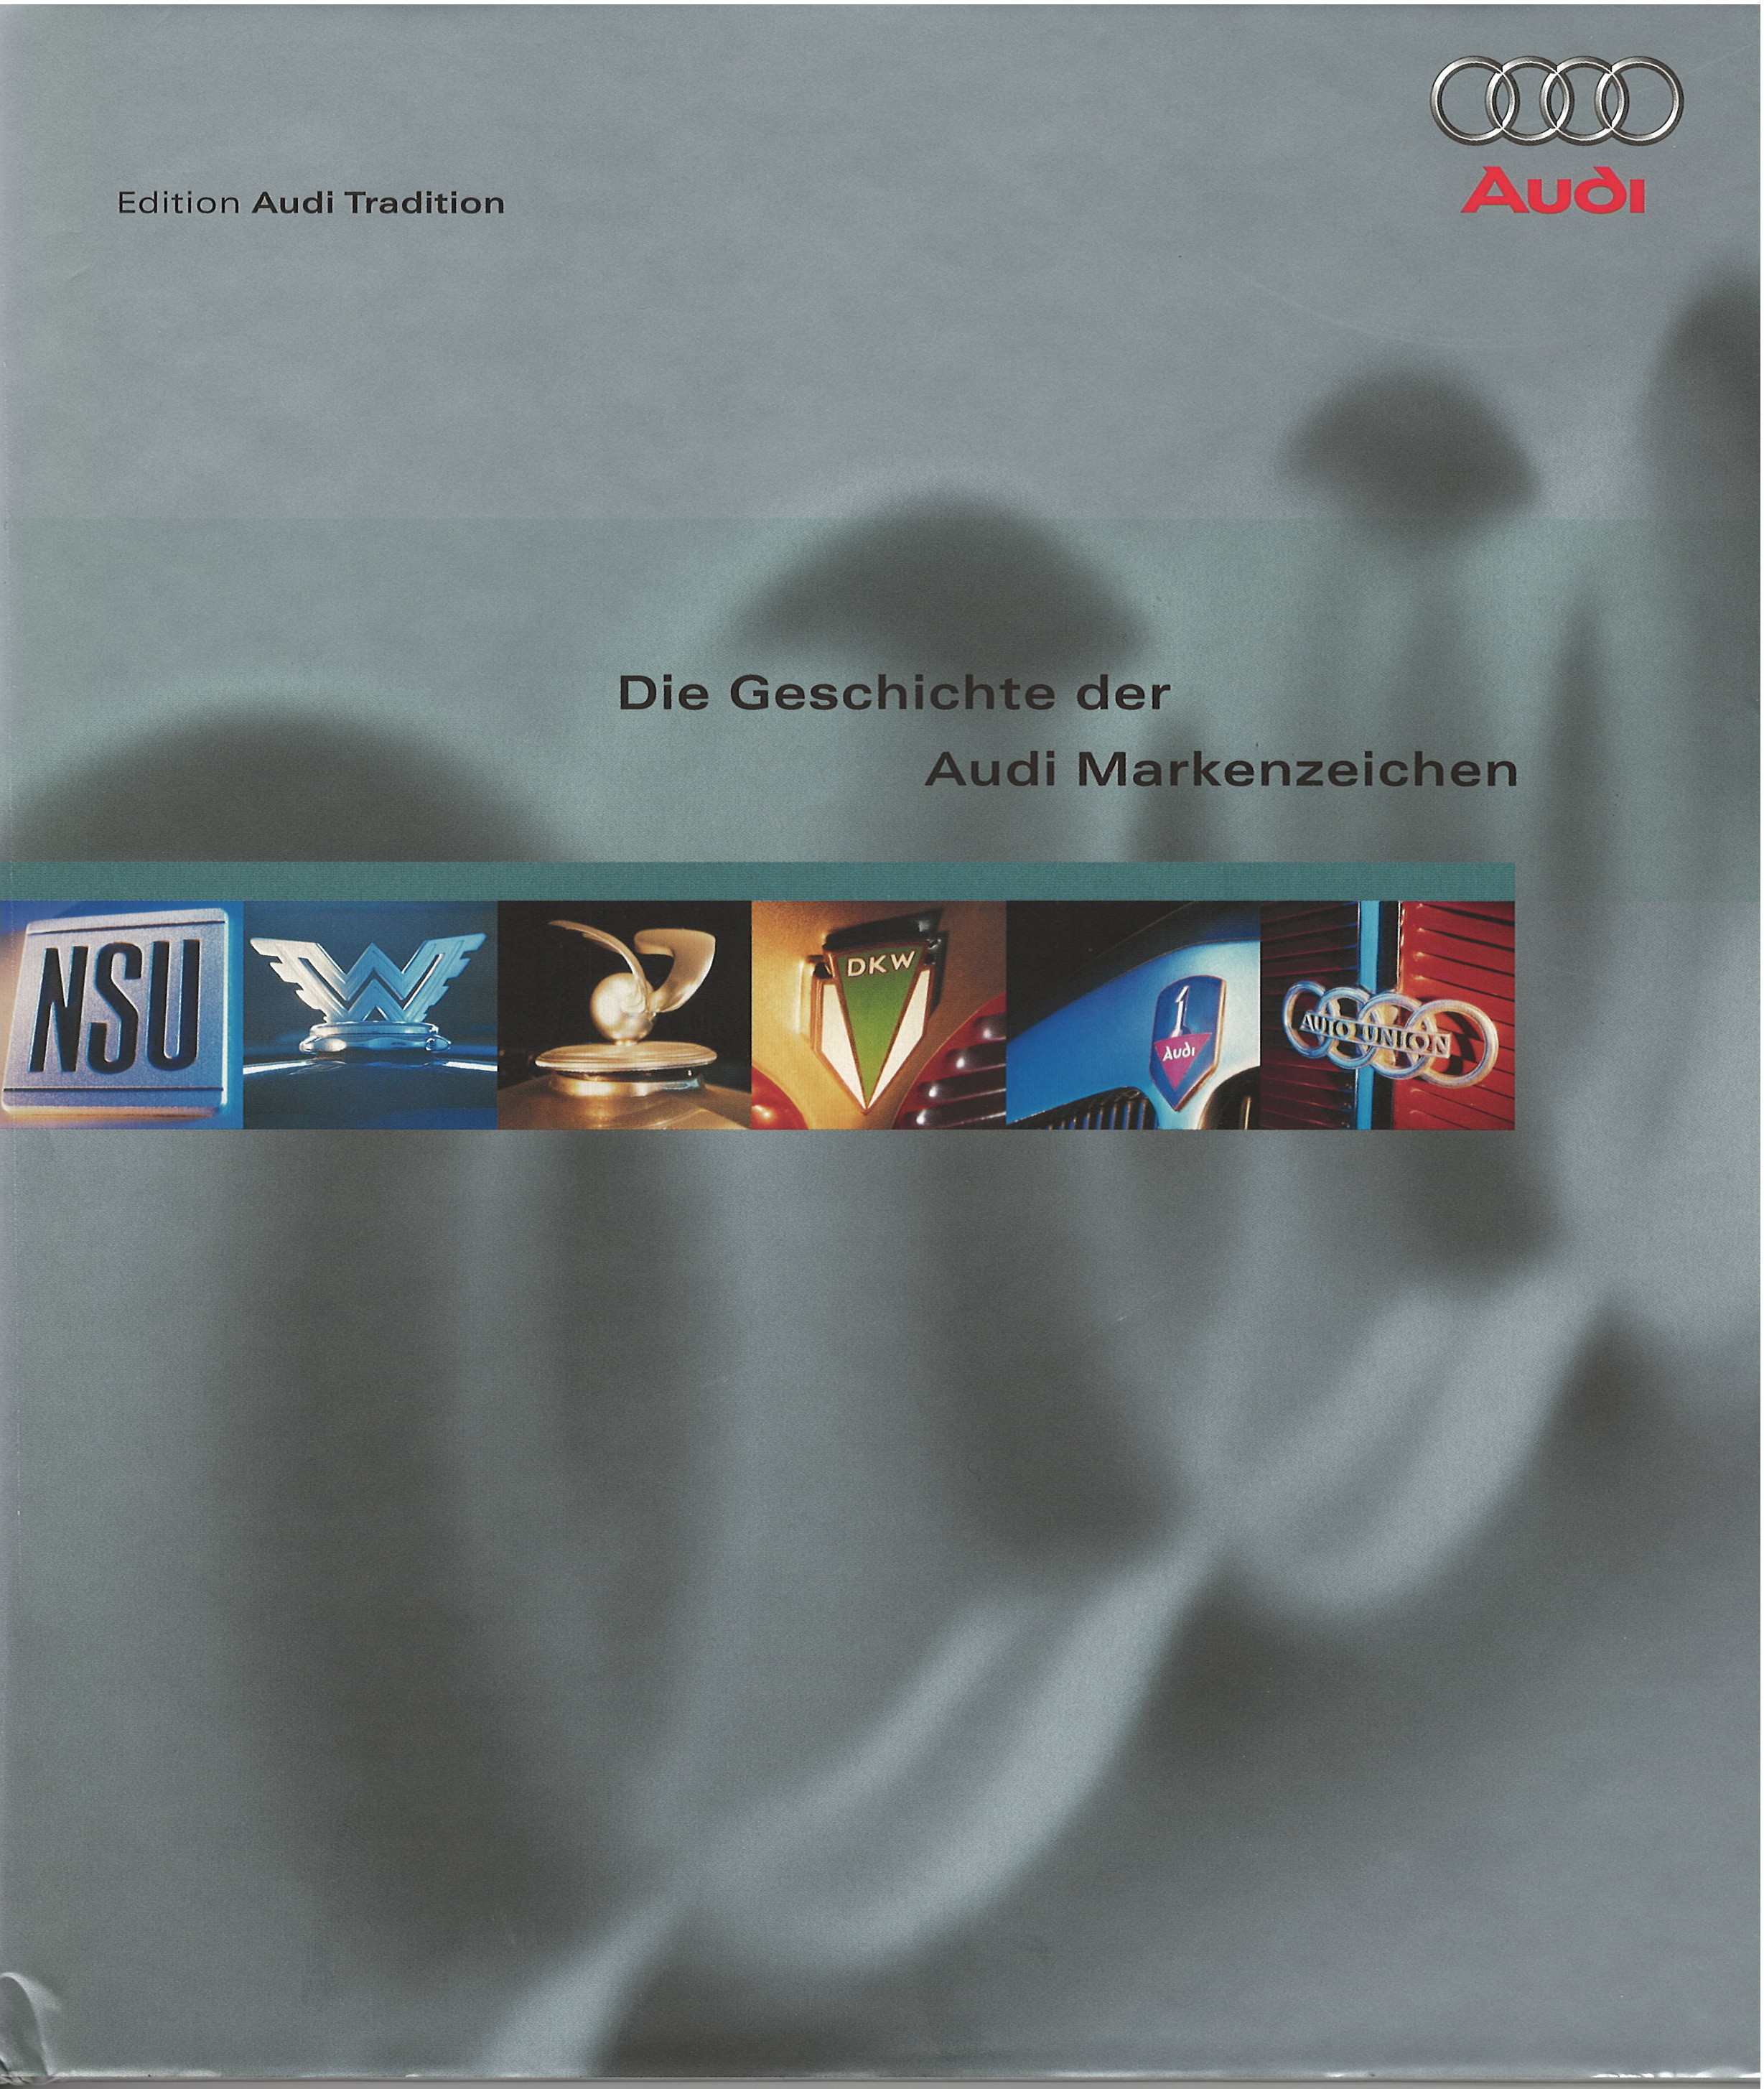 Die Geschichte der Audi Markenzeichen, DELIUS KLASING, 2002 1. Aufl., 160 Seiten, ISBN 3-7688-1415-7